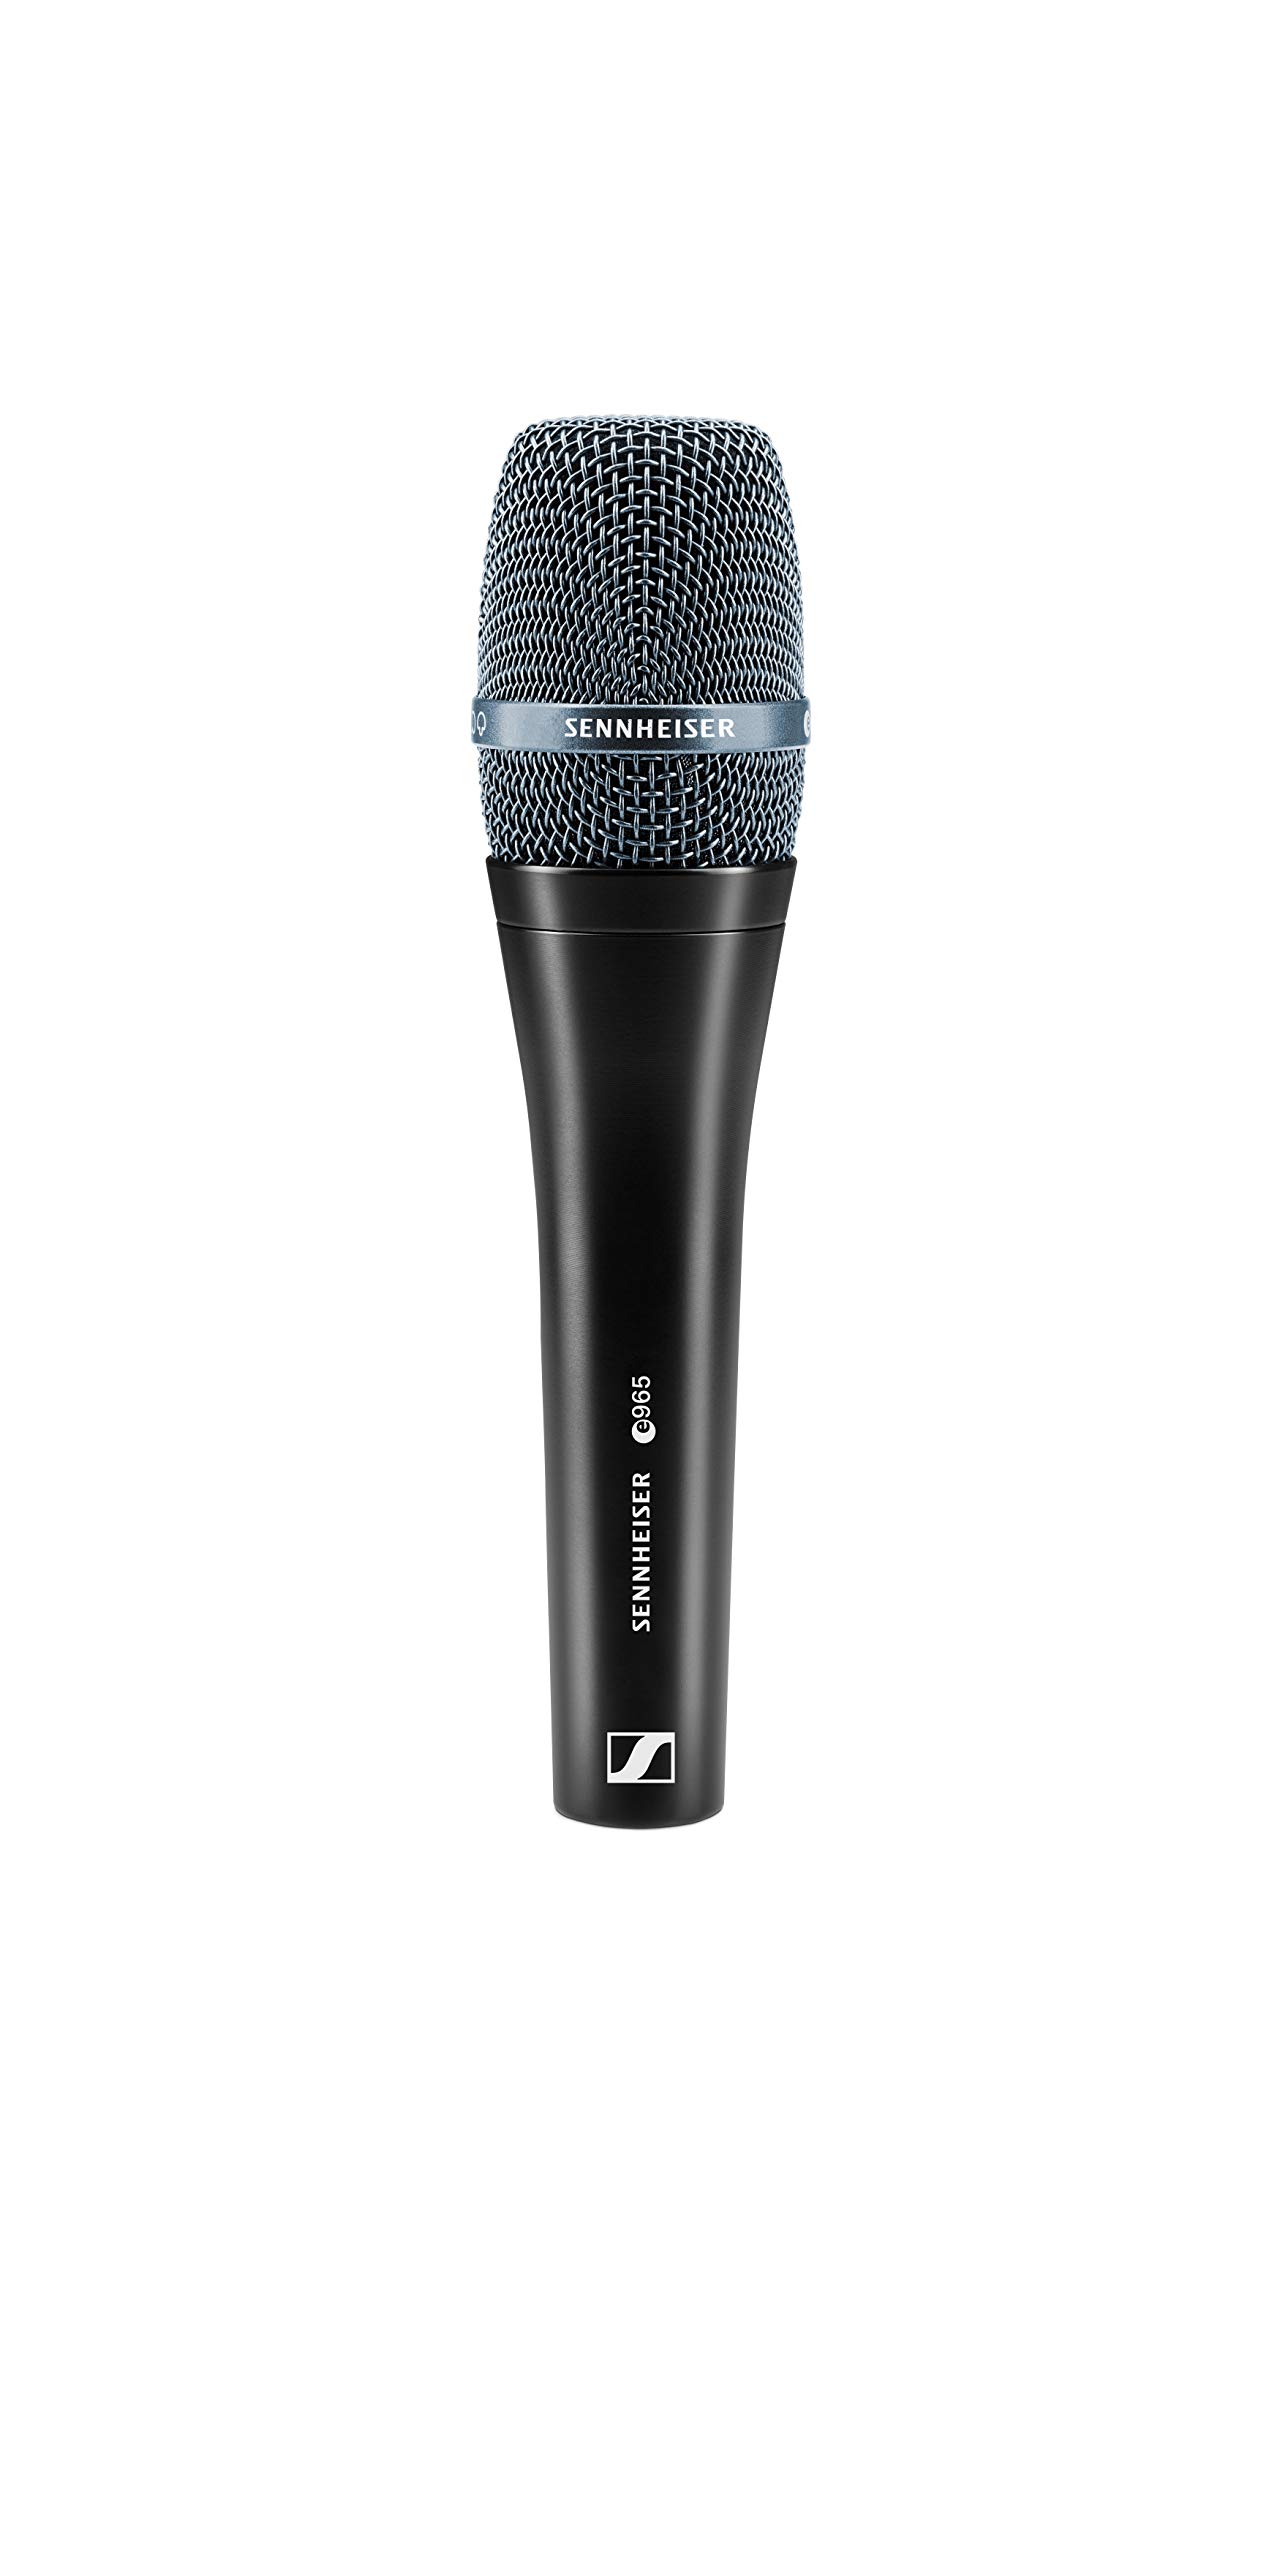 Sennheiser Pro Audio e 965 Конденсаторный ручной микрофон с большой диафрагмой